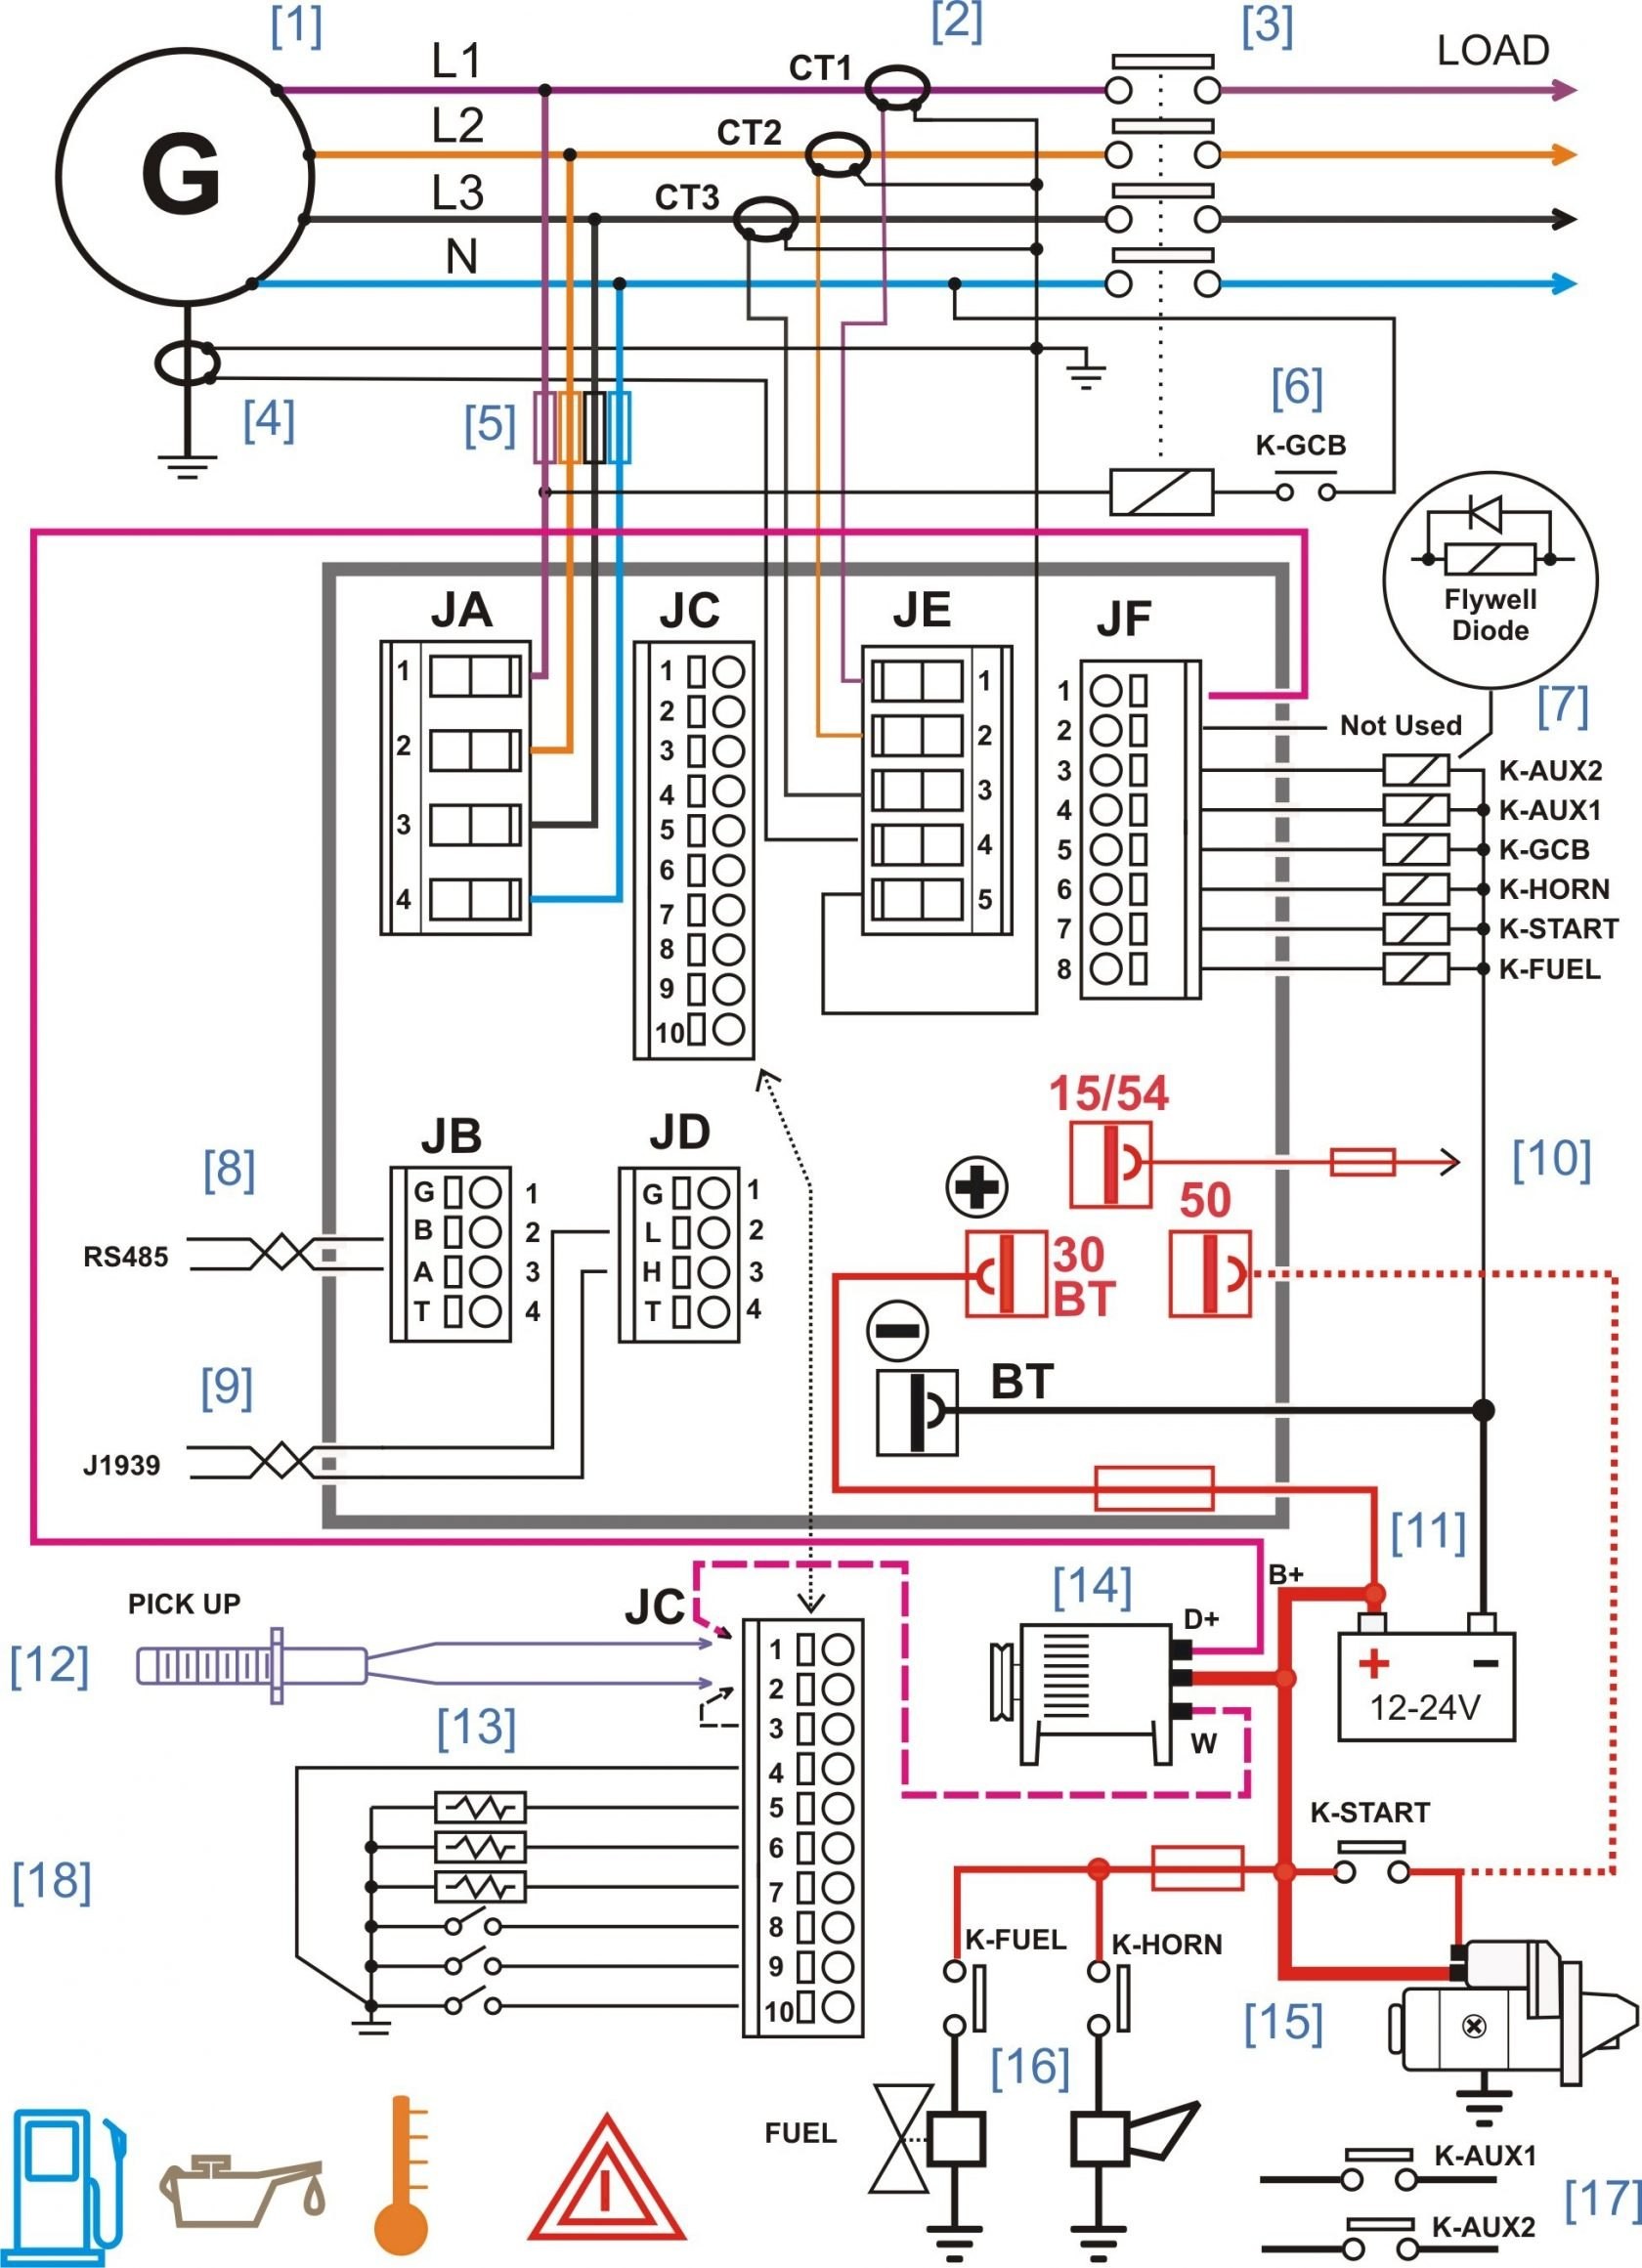 Circuit Diagram Generator Lovely Generator Wiring Diagram and Electrical Schematics Gansoukin Me 34 Elegant Circuit